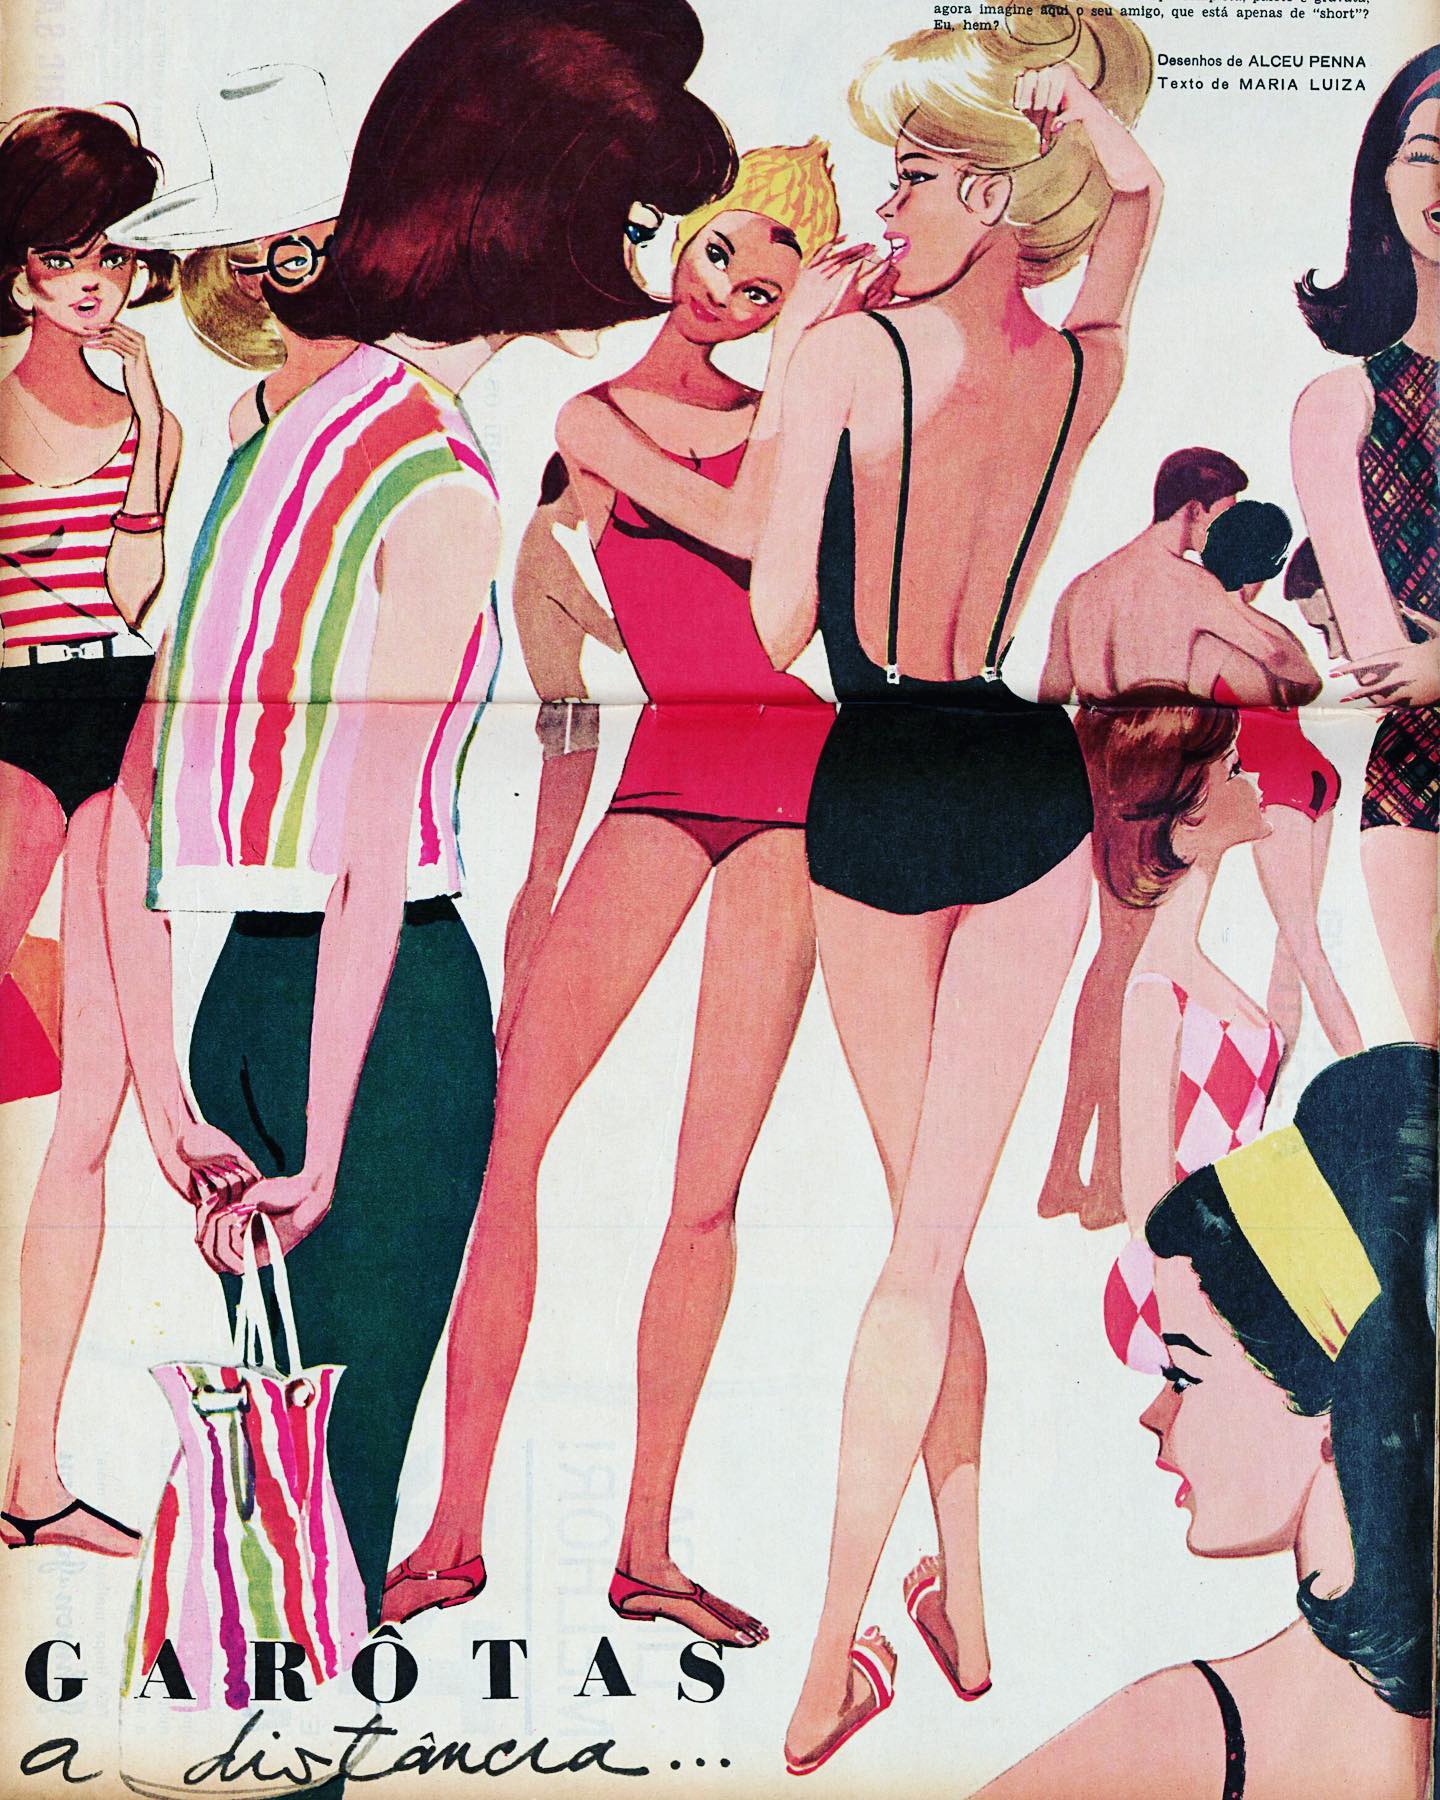 Garotas à distancia, ilustração de Alceu Penna, 1963.